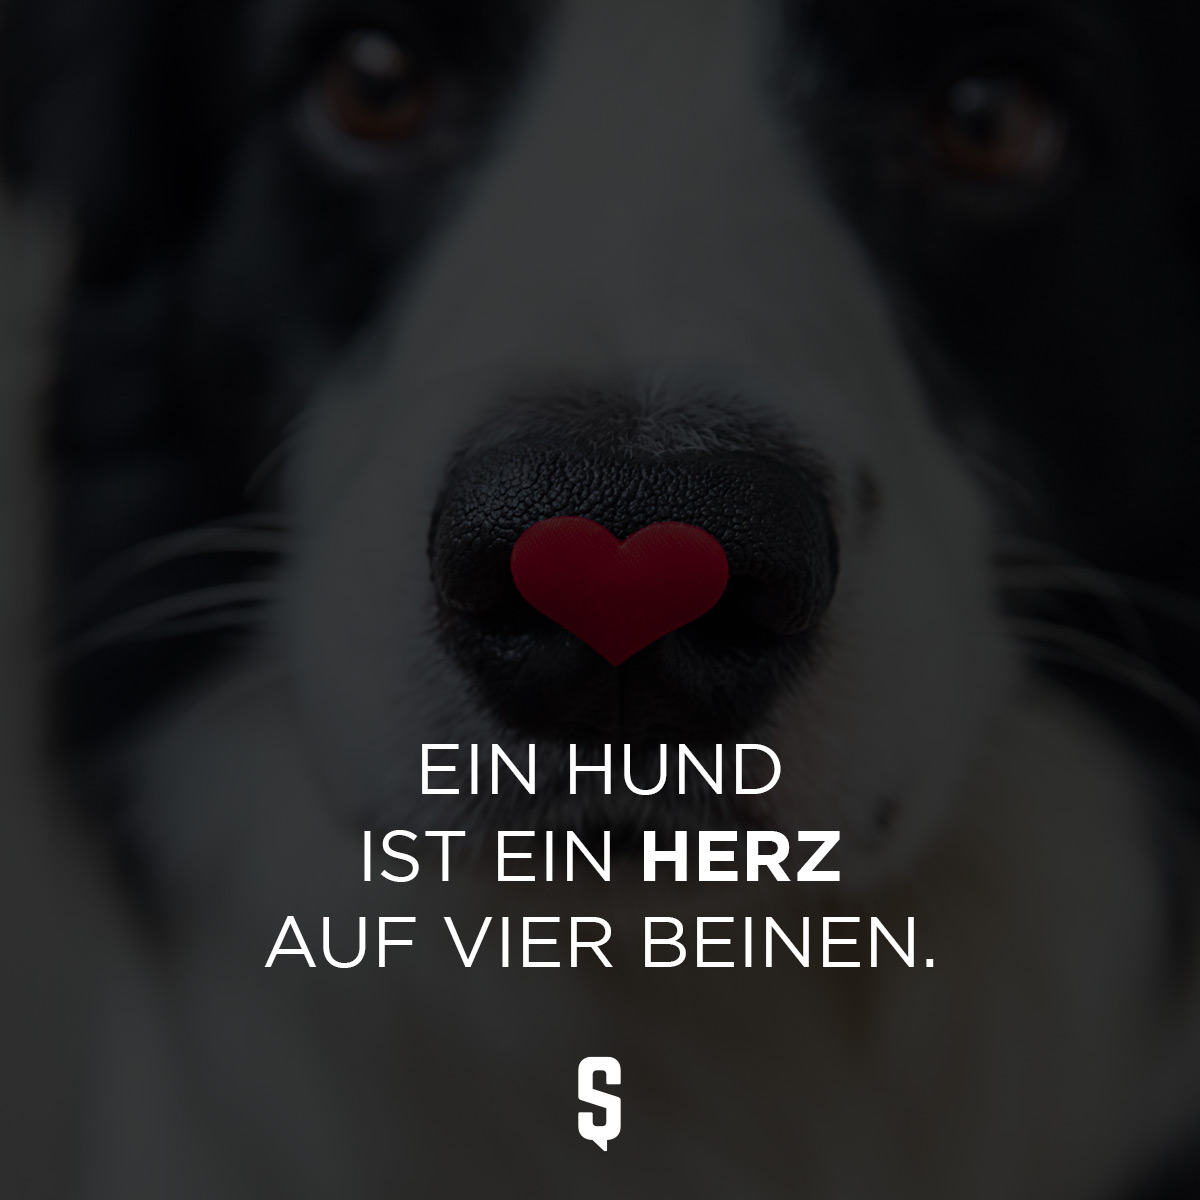 Ein Hund ist ein Herz auf vier Beinen.